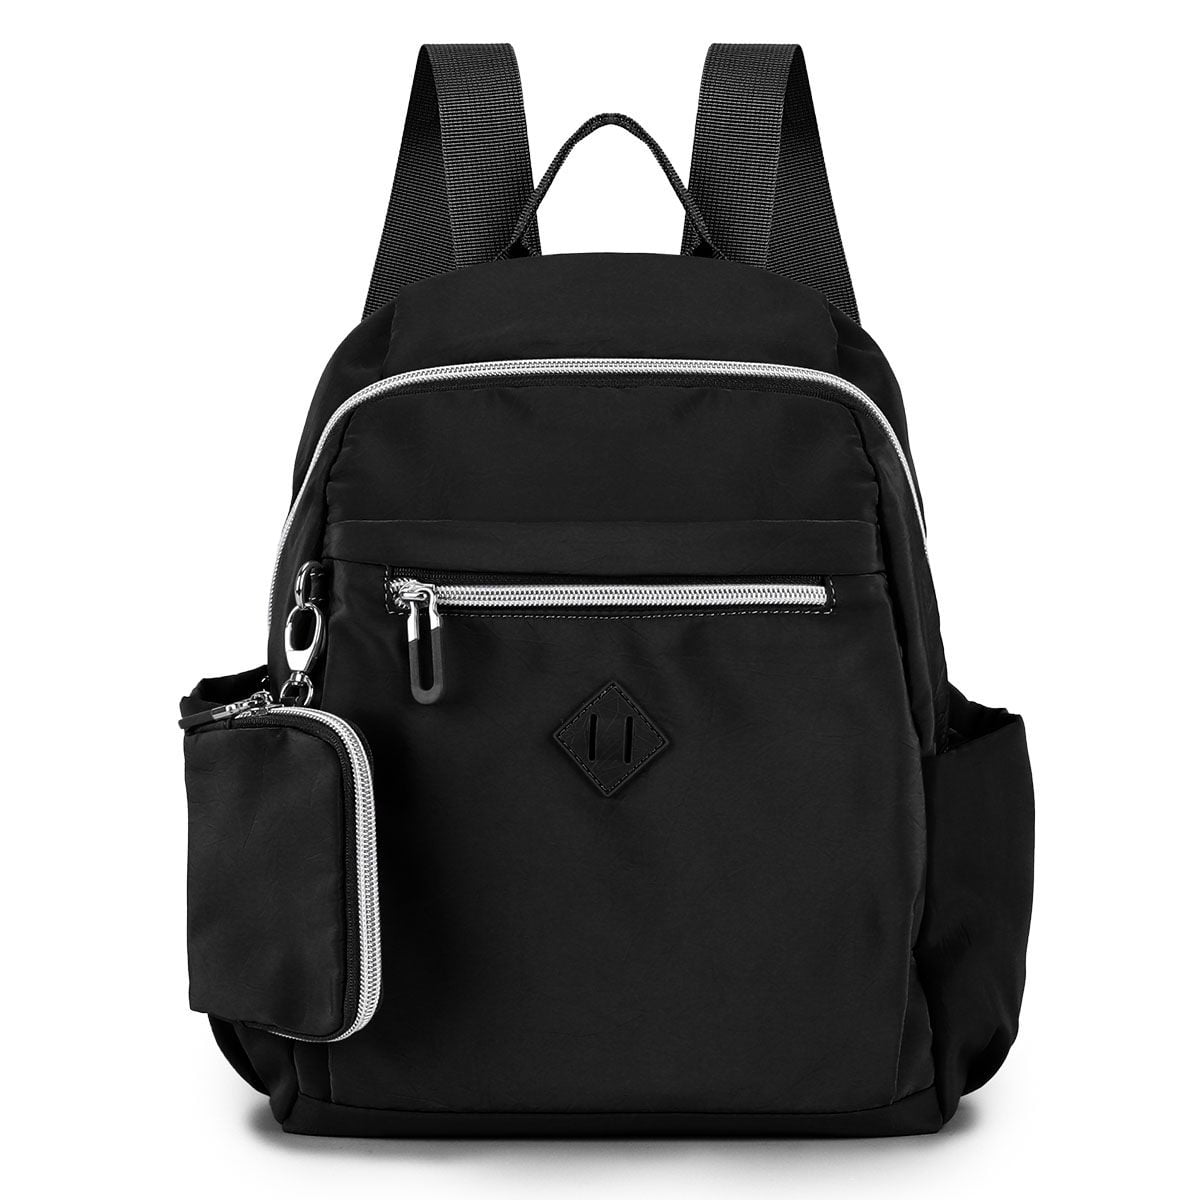 Gustave Mini Backpack for Women Waterproof Travel Backpack Shoulder Bag ...